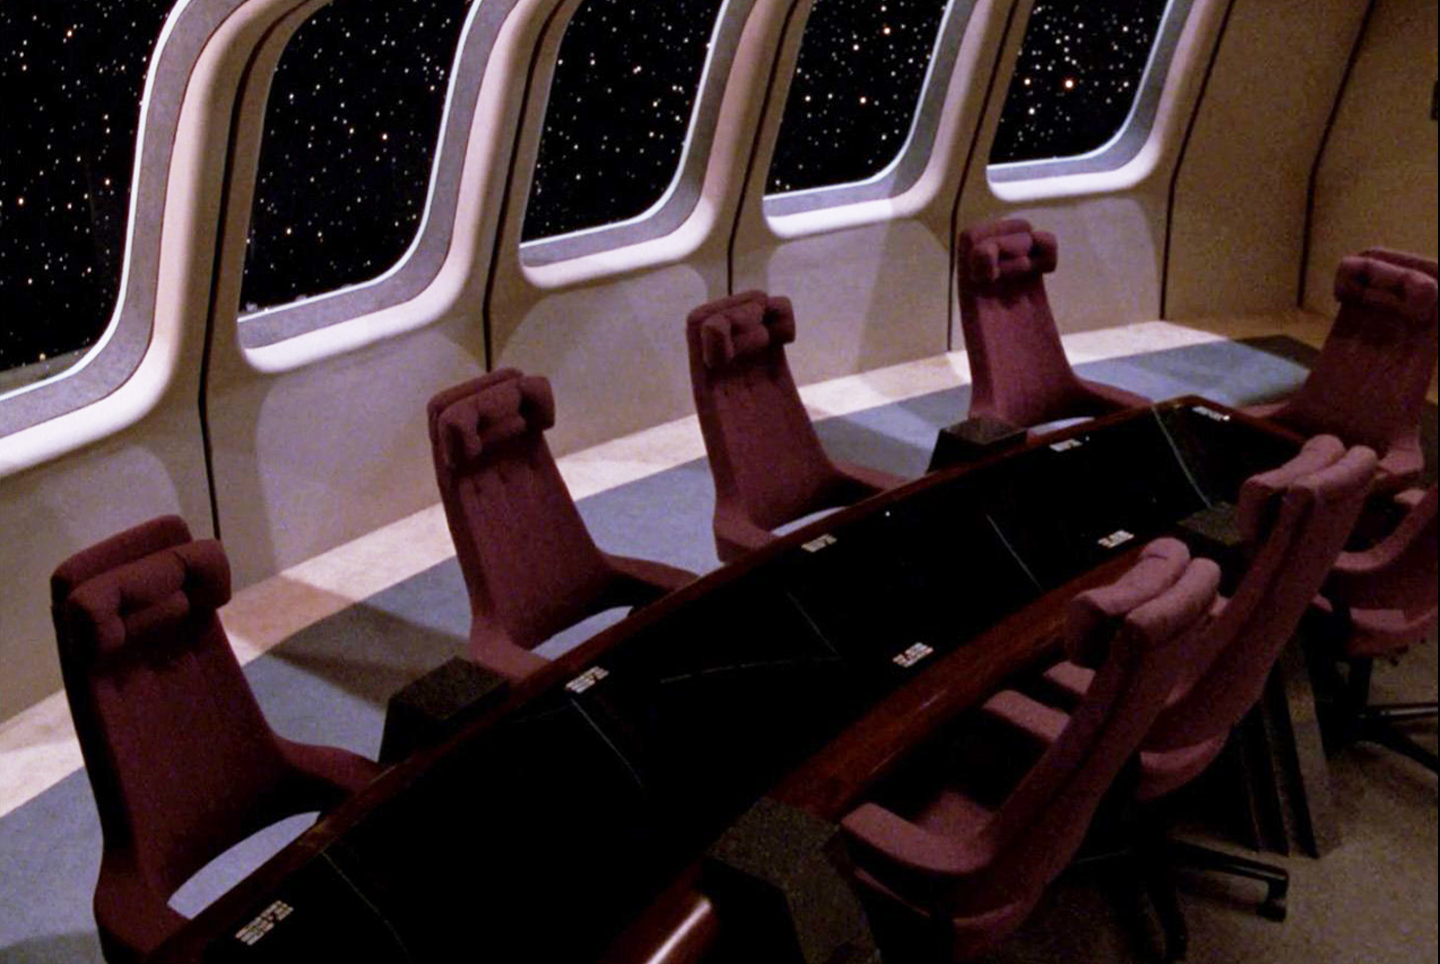 Hag Anova 2030 chair by Peter Opsvik as seen in Star Trek